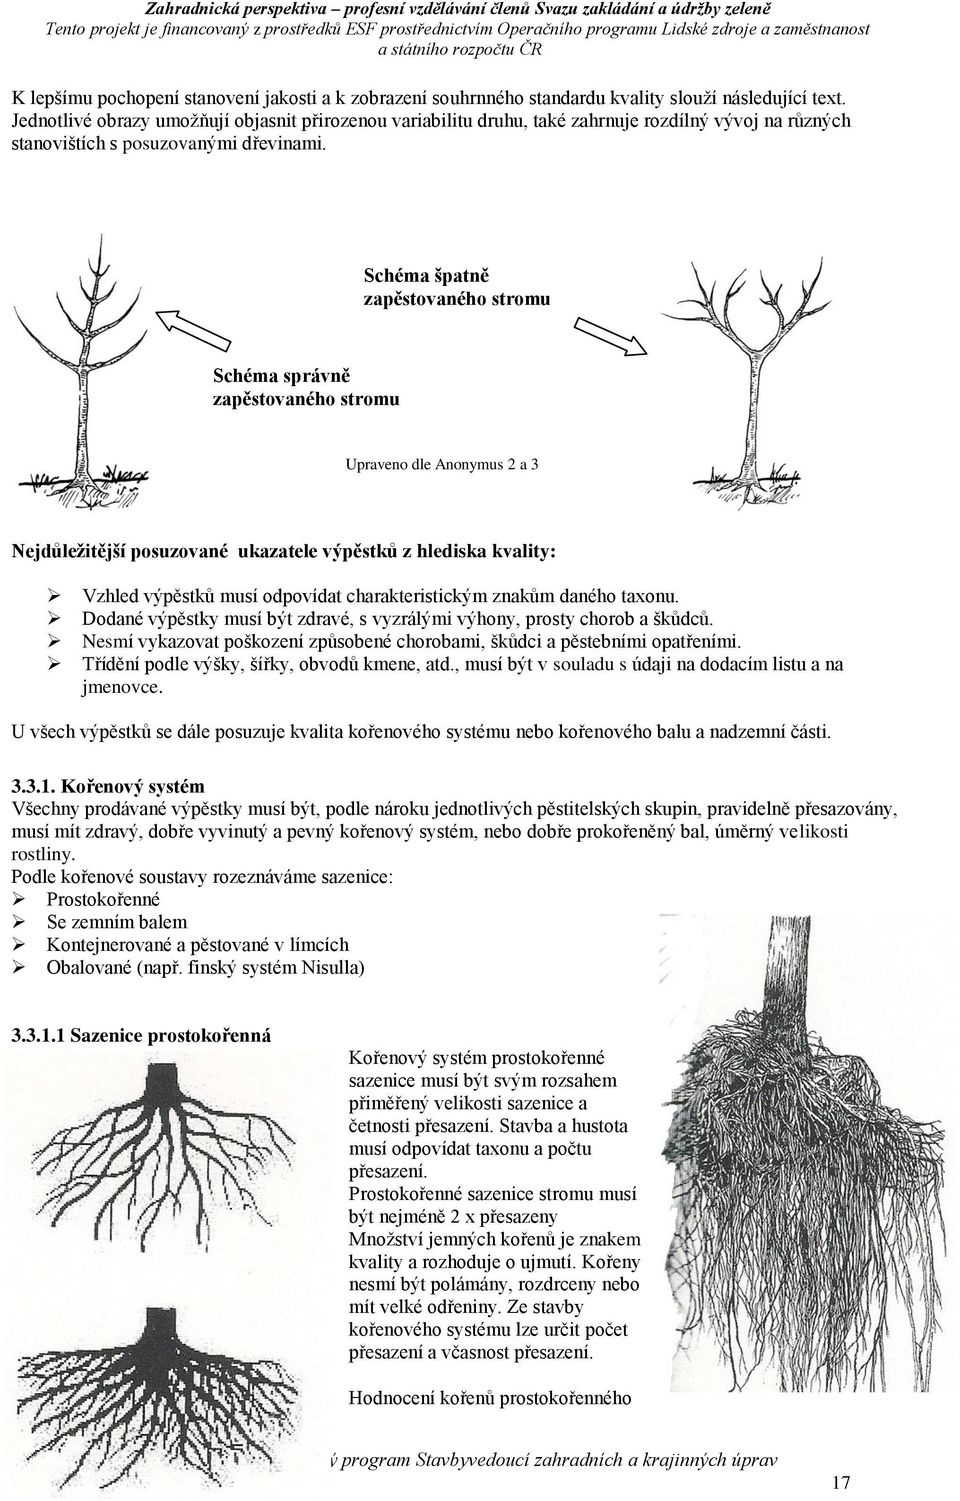 Schéma špatně zapěstovaného stromu Schéma správně zapěstovaného stromu Upraveno dle Anonymus 2 a 3 Nejdůležitější posuzované ukazatele výpěstků z hlediska kvality: Vzhled výpěstků musí odpovídat